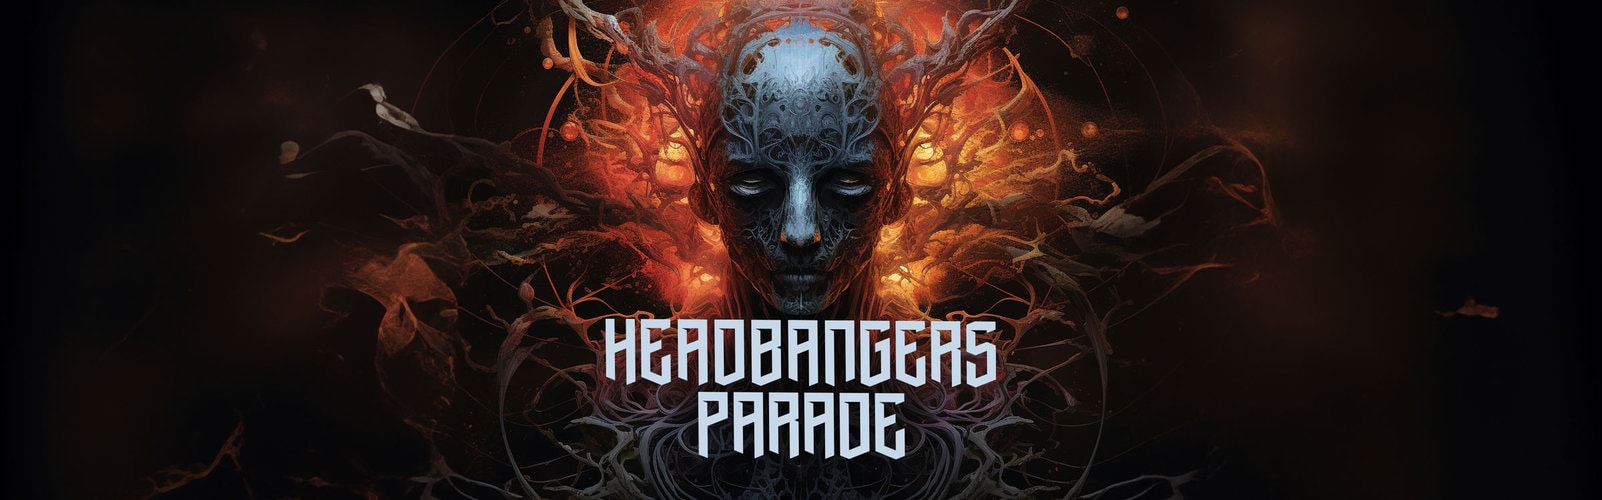 Headbangers Parade logo